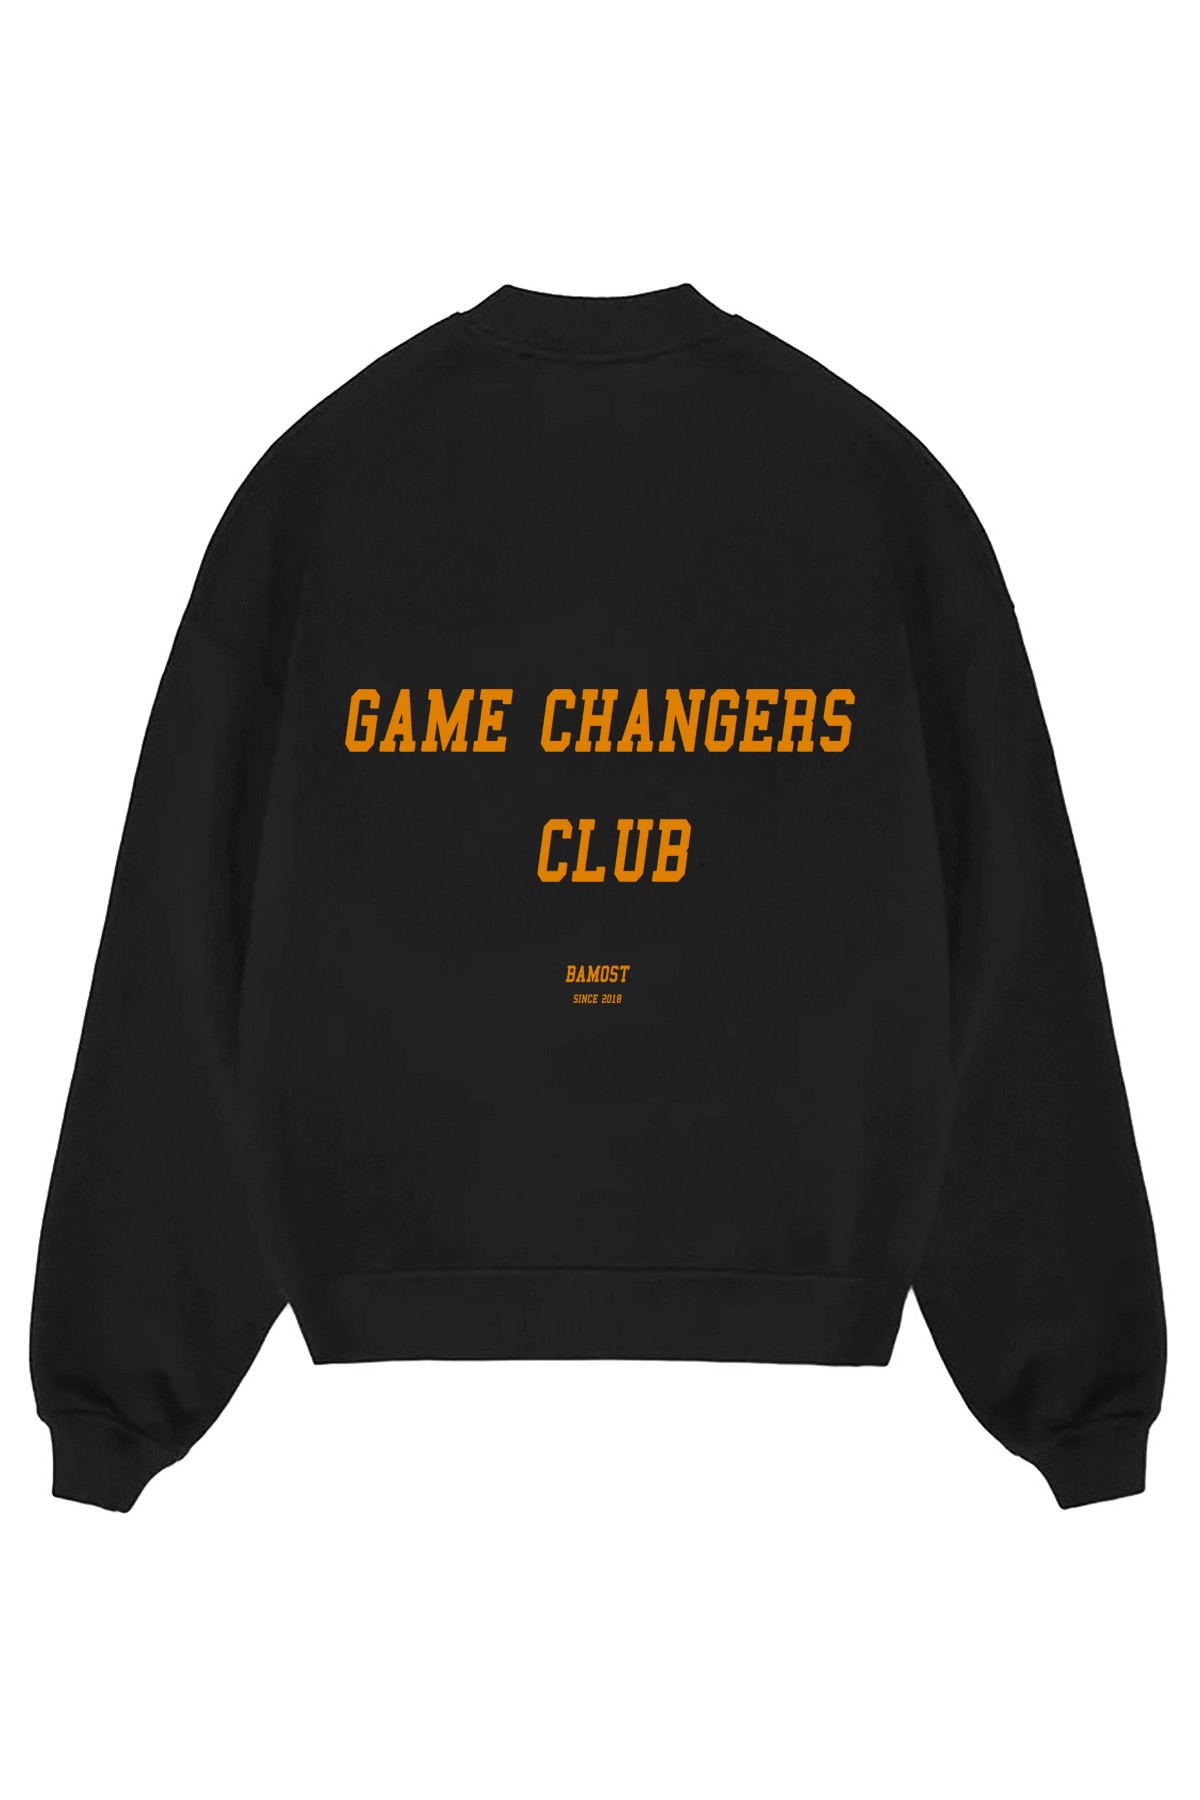 Club - Oversize Sweatshirt